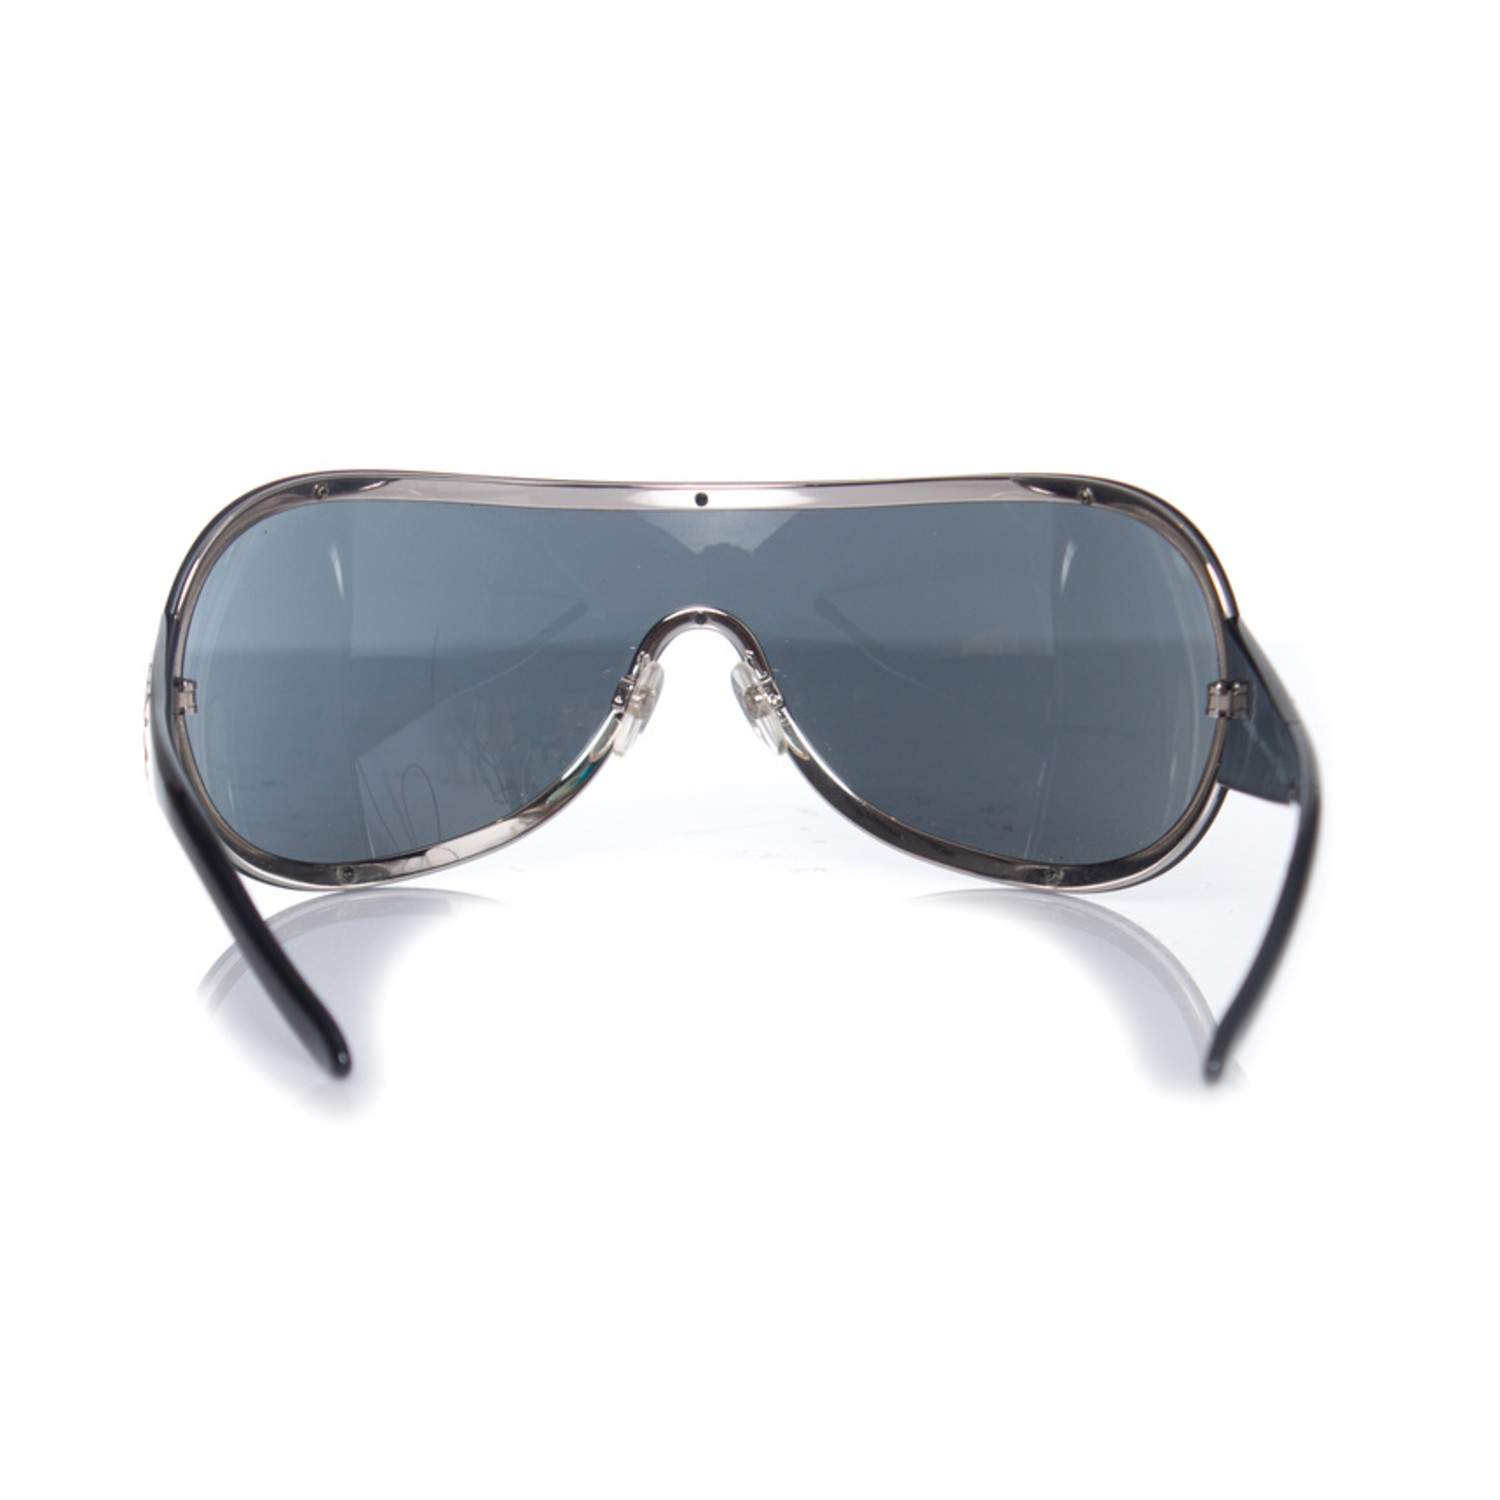 Sunglasses: Shield Sunglasses, nylon — Fashion